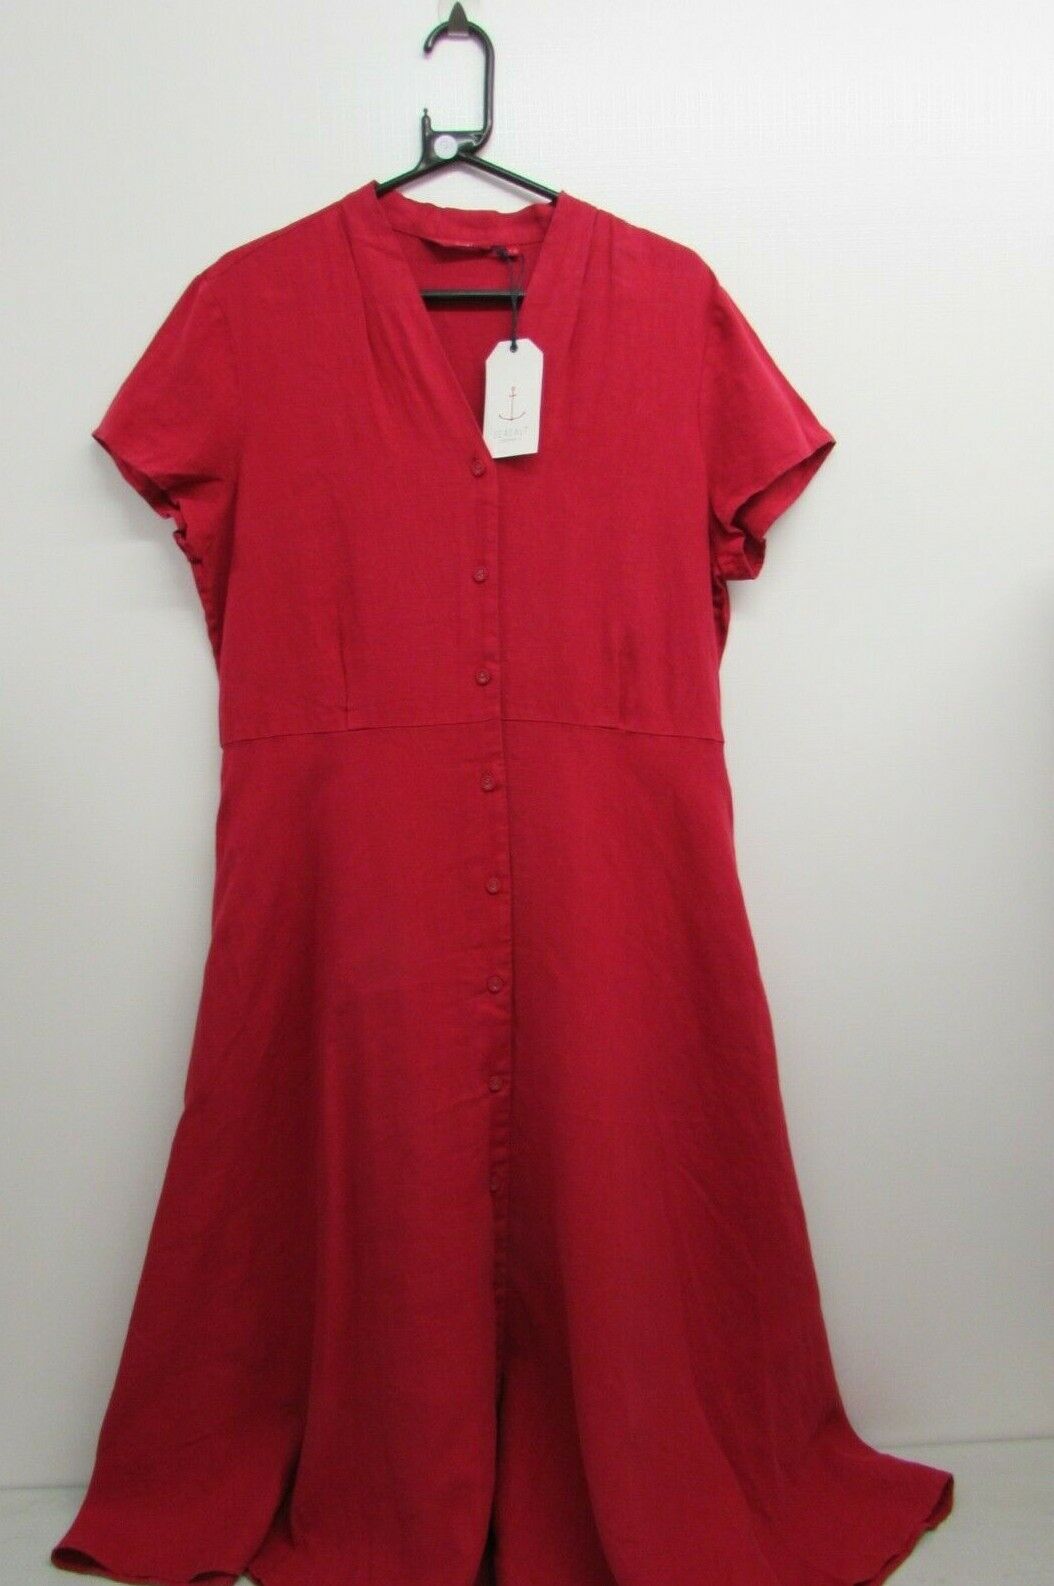 WOMEN\'S SEASALT CORNWALL RED LINEN DRESS - SIZE 16, BNWT                    #NS#